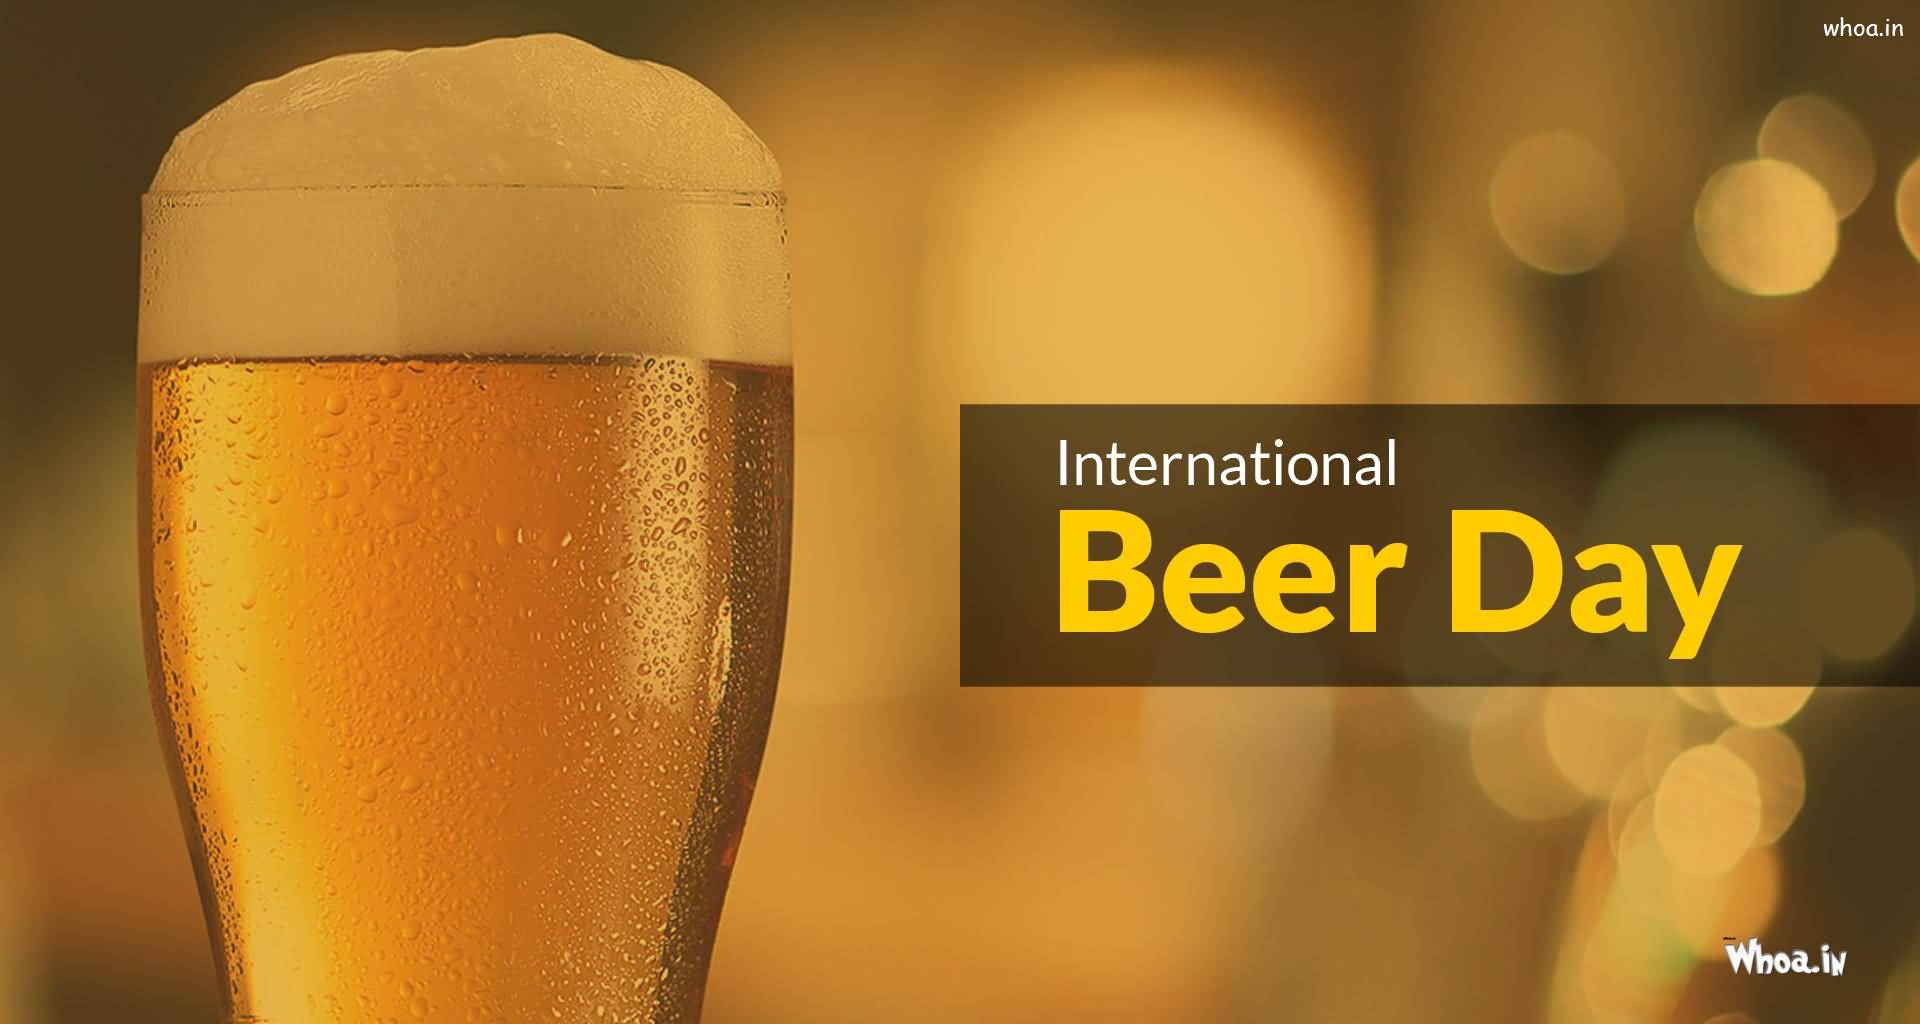 International Beer Day 2017 Greetings